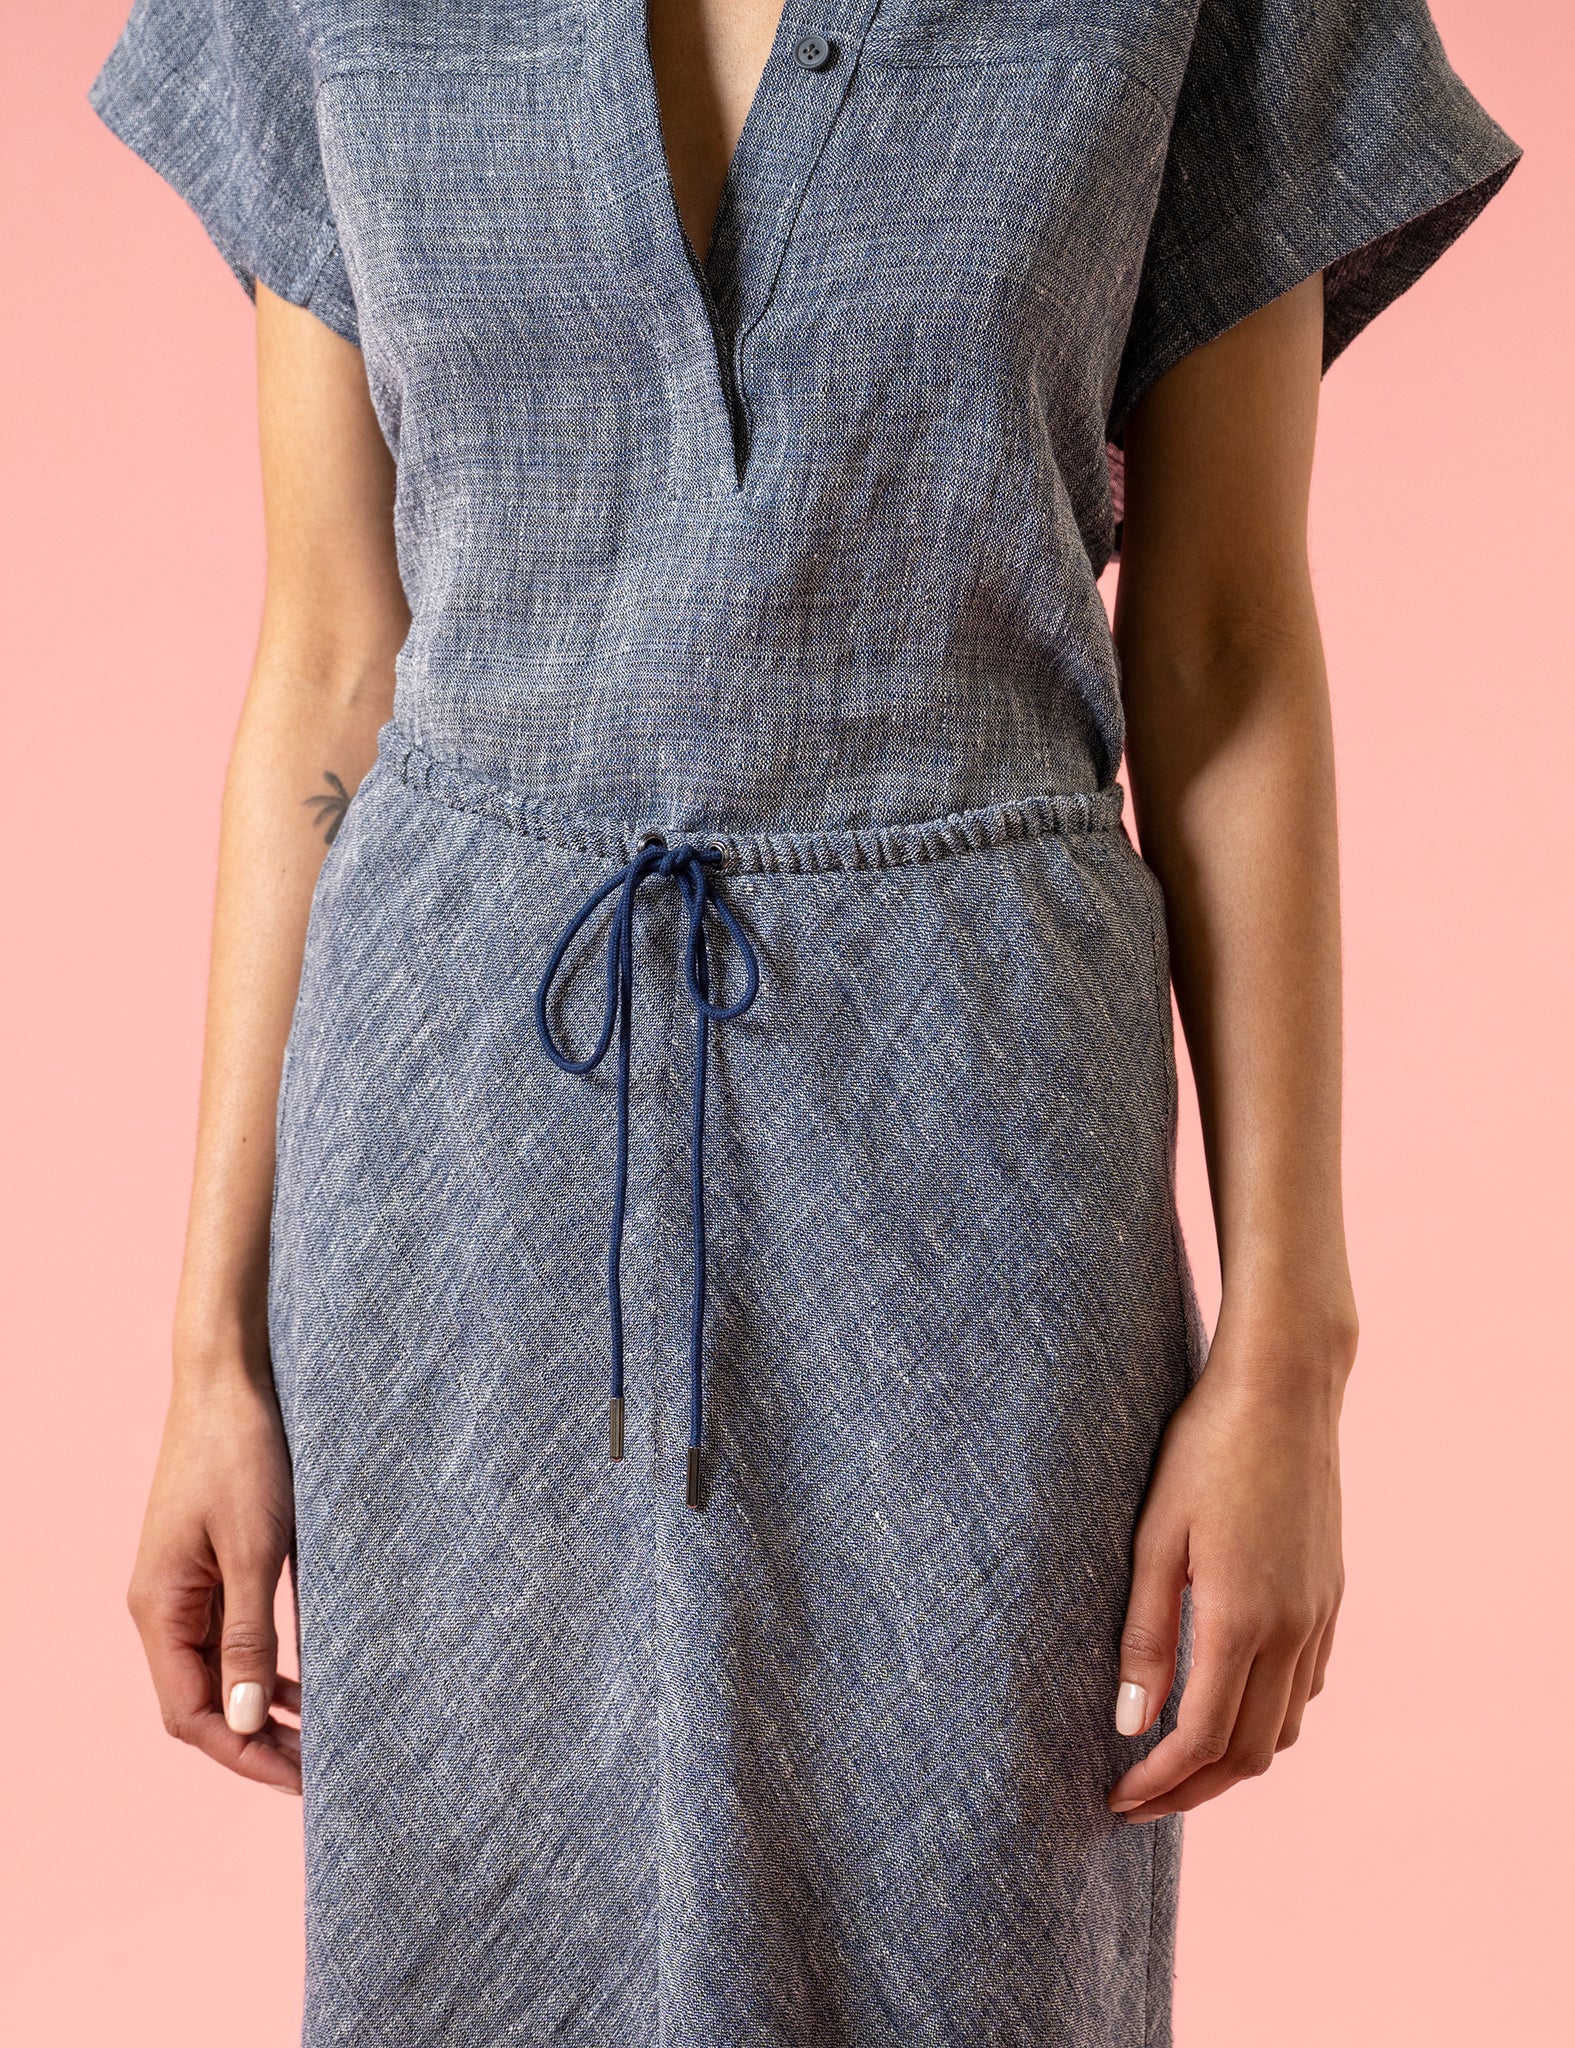 PHOEBE - luxe linen drawstring skirt